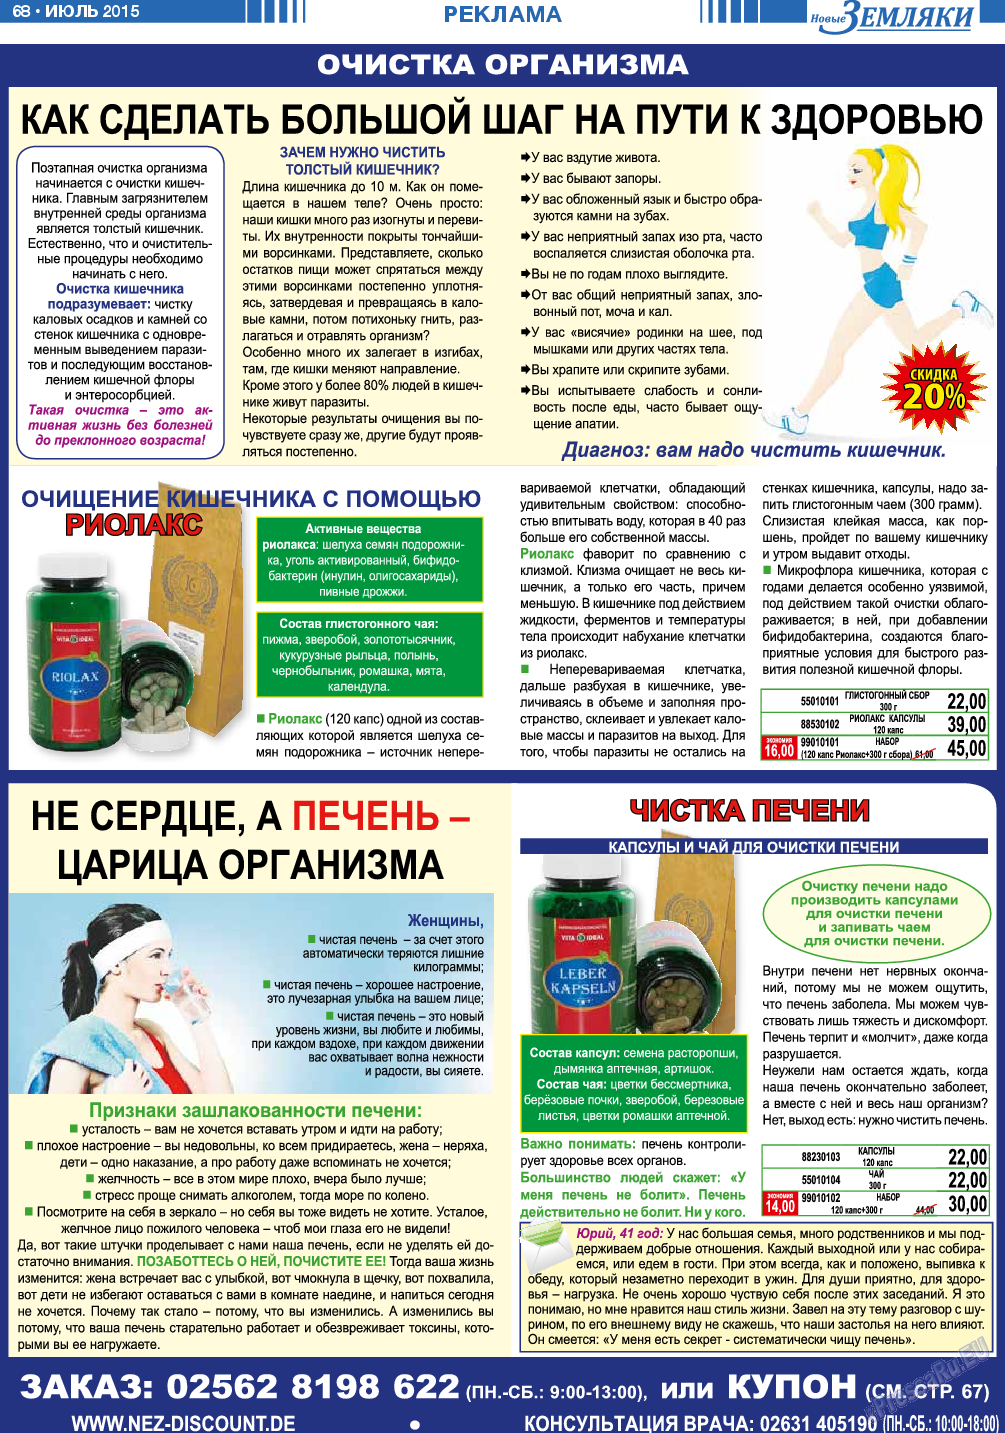 Новые Земляки, газета. 2015 №7 стр.68